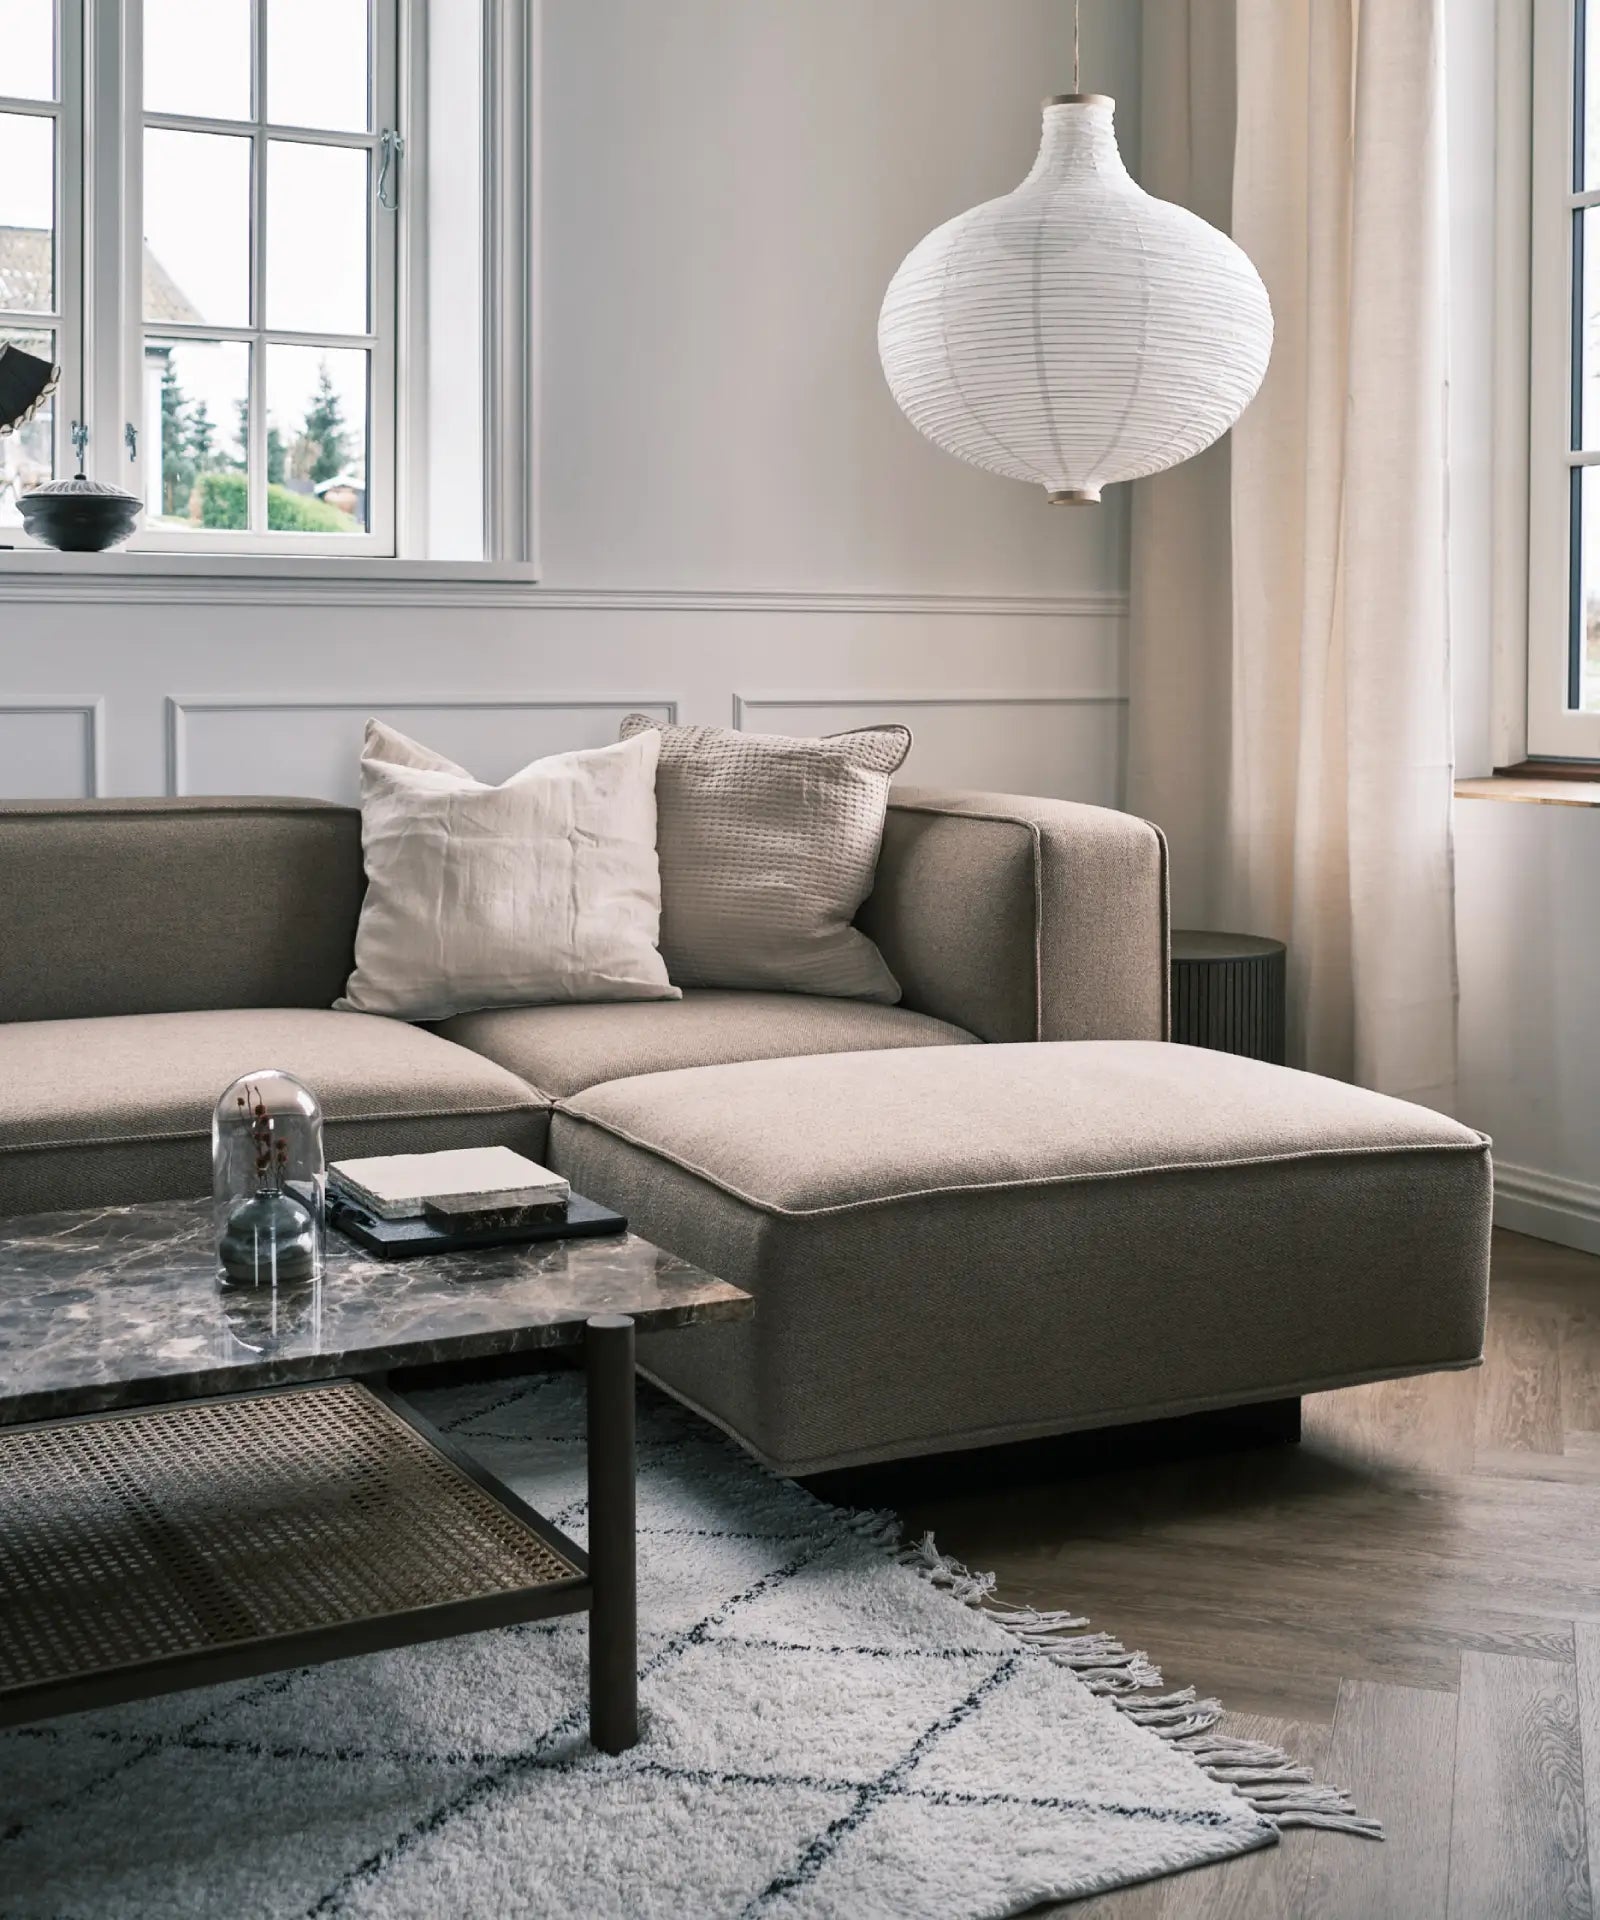 Utopia design modulær sofa i mørk beige stof fra Njordec ligner BASECAMP og Develius sofa